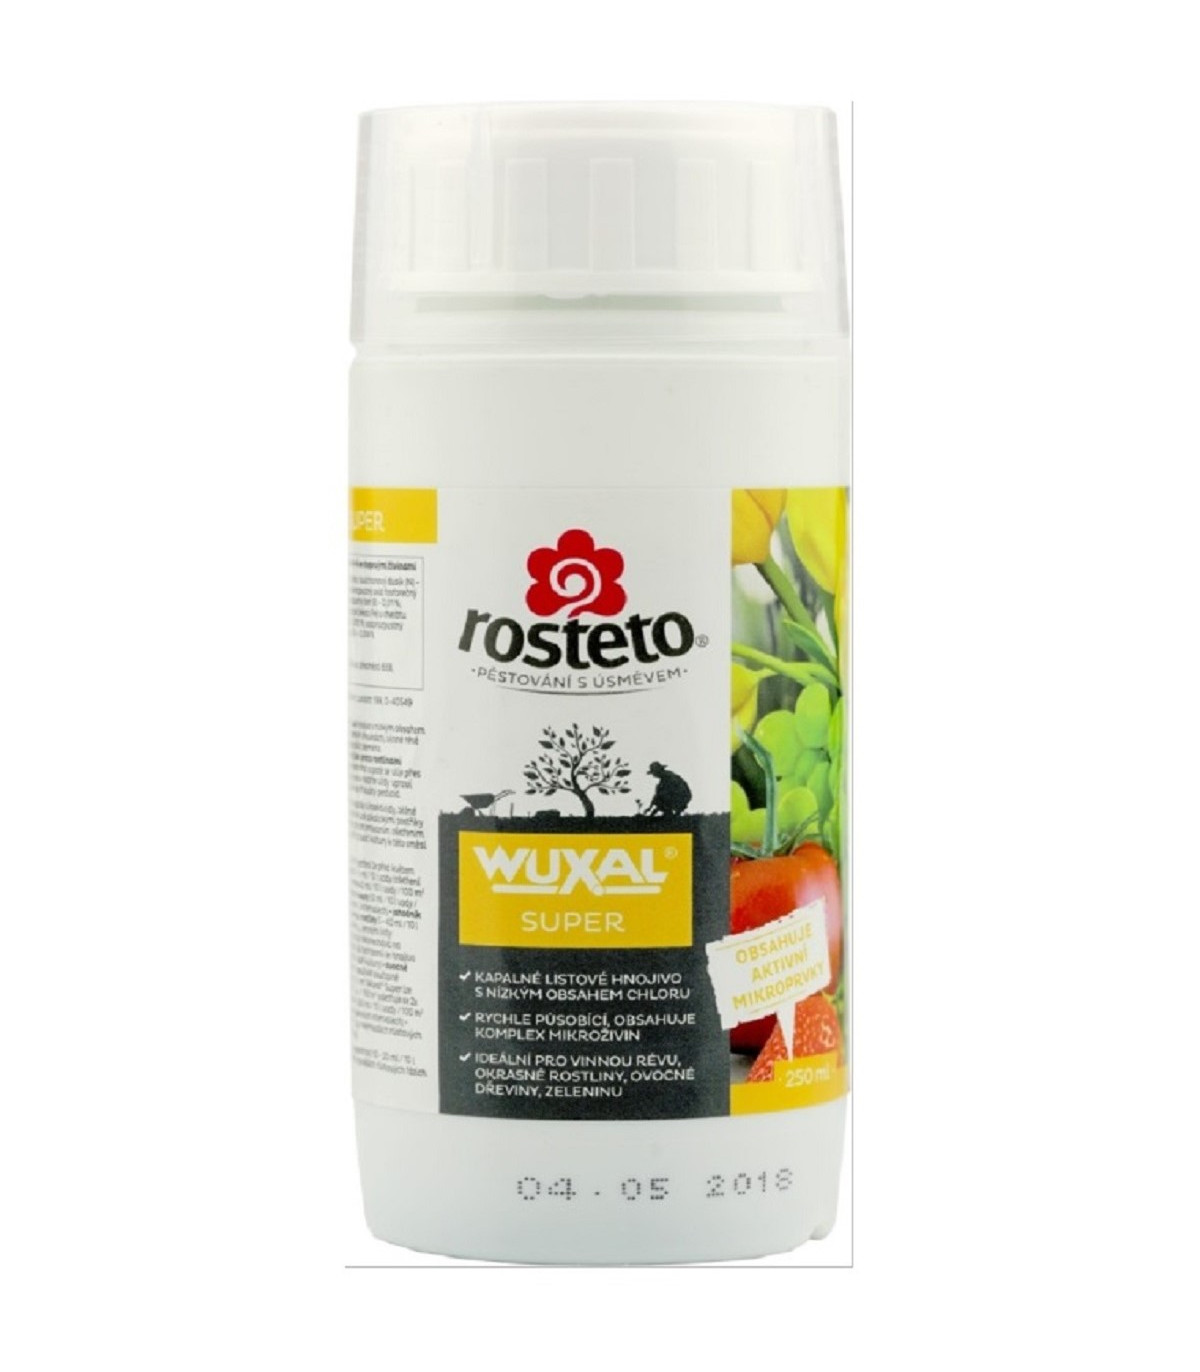 Wuxal super - Rosteto - tekuté hnojivo - 250 ml